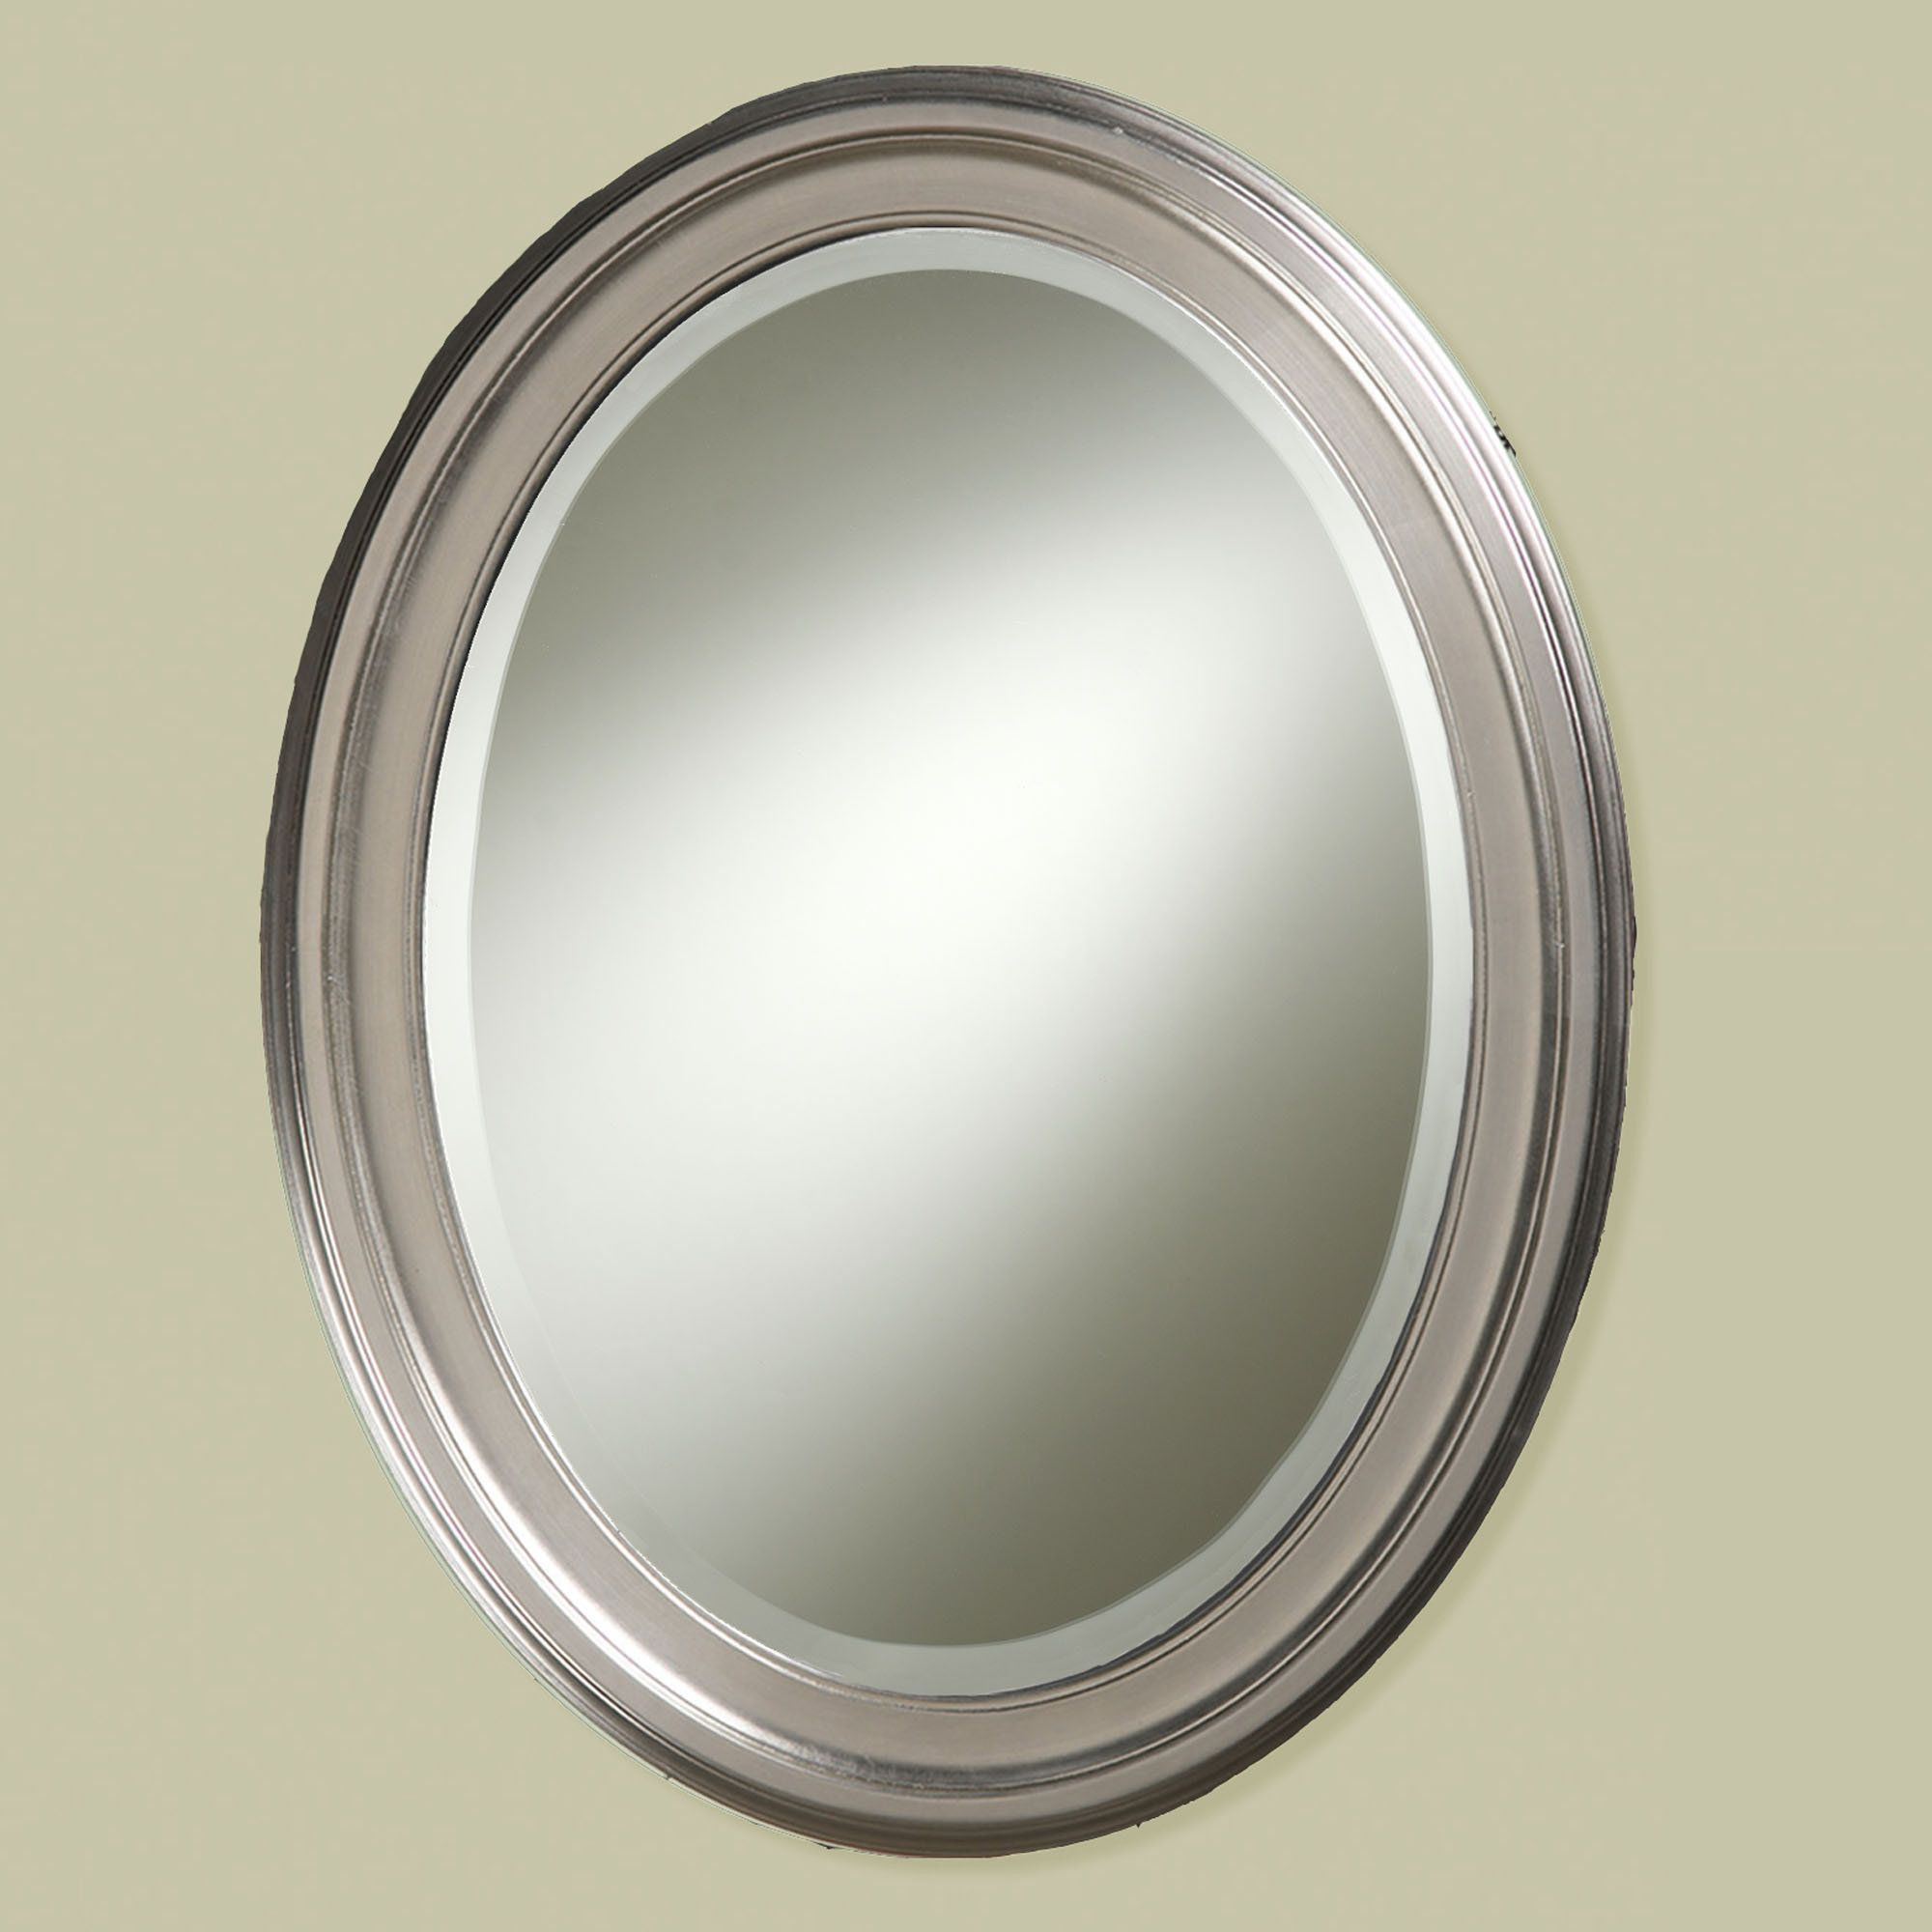 Polished Nickel Bathroom Mirror
 oval wall mirrors